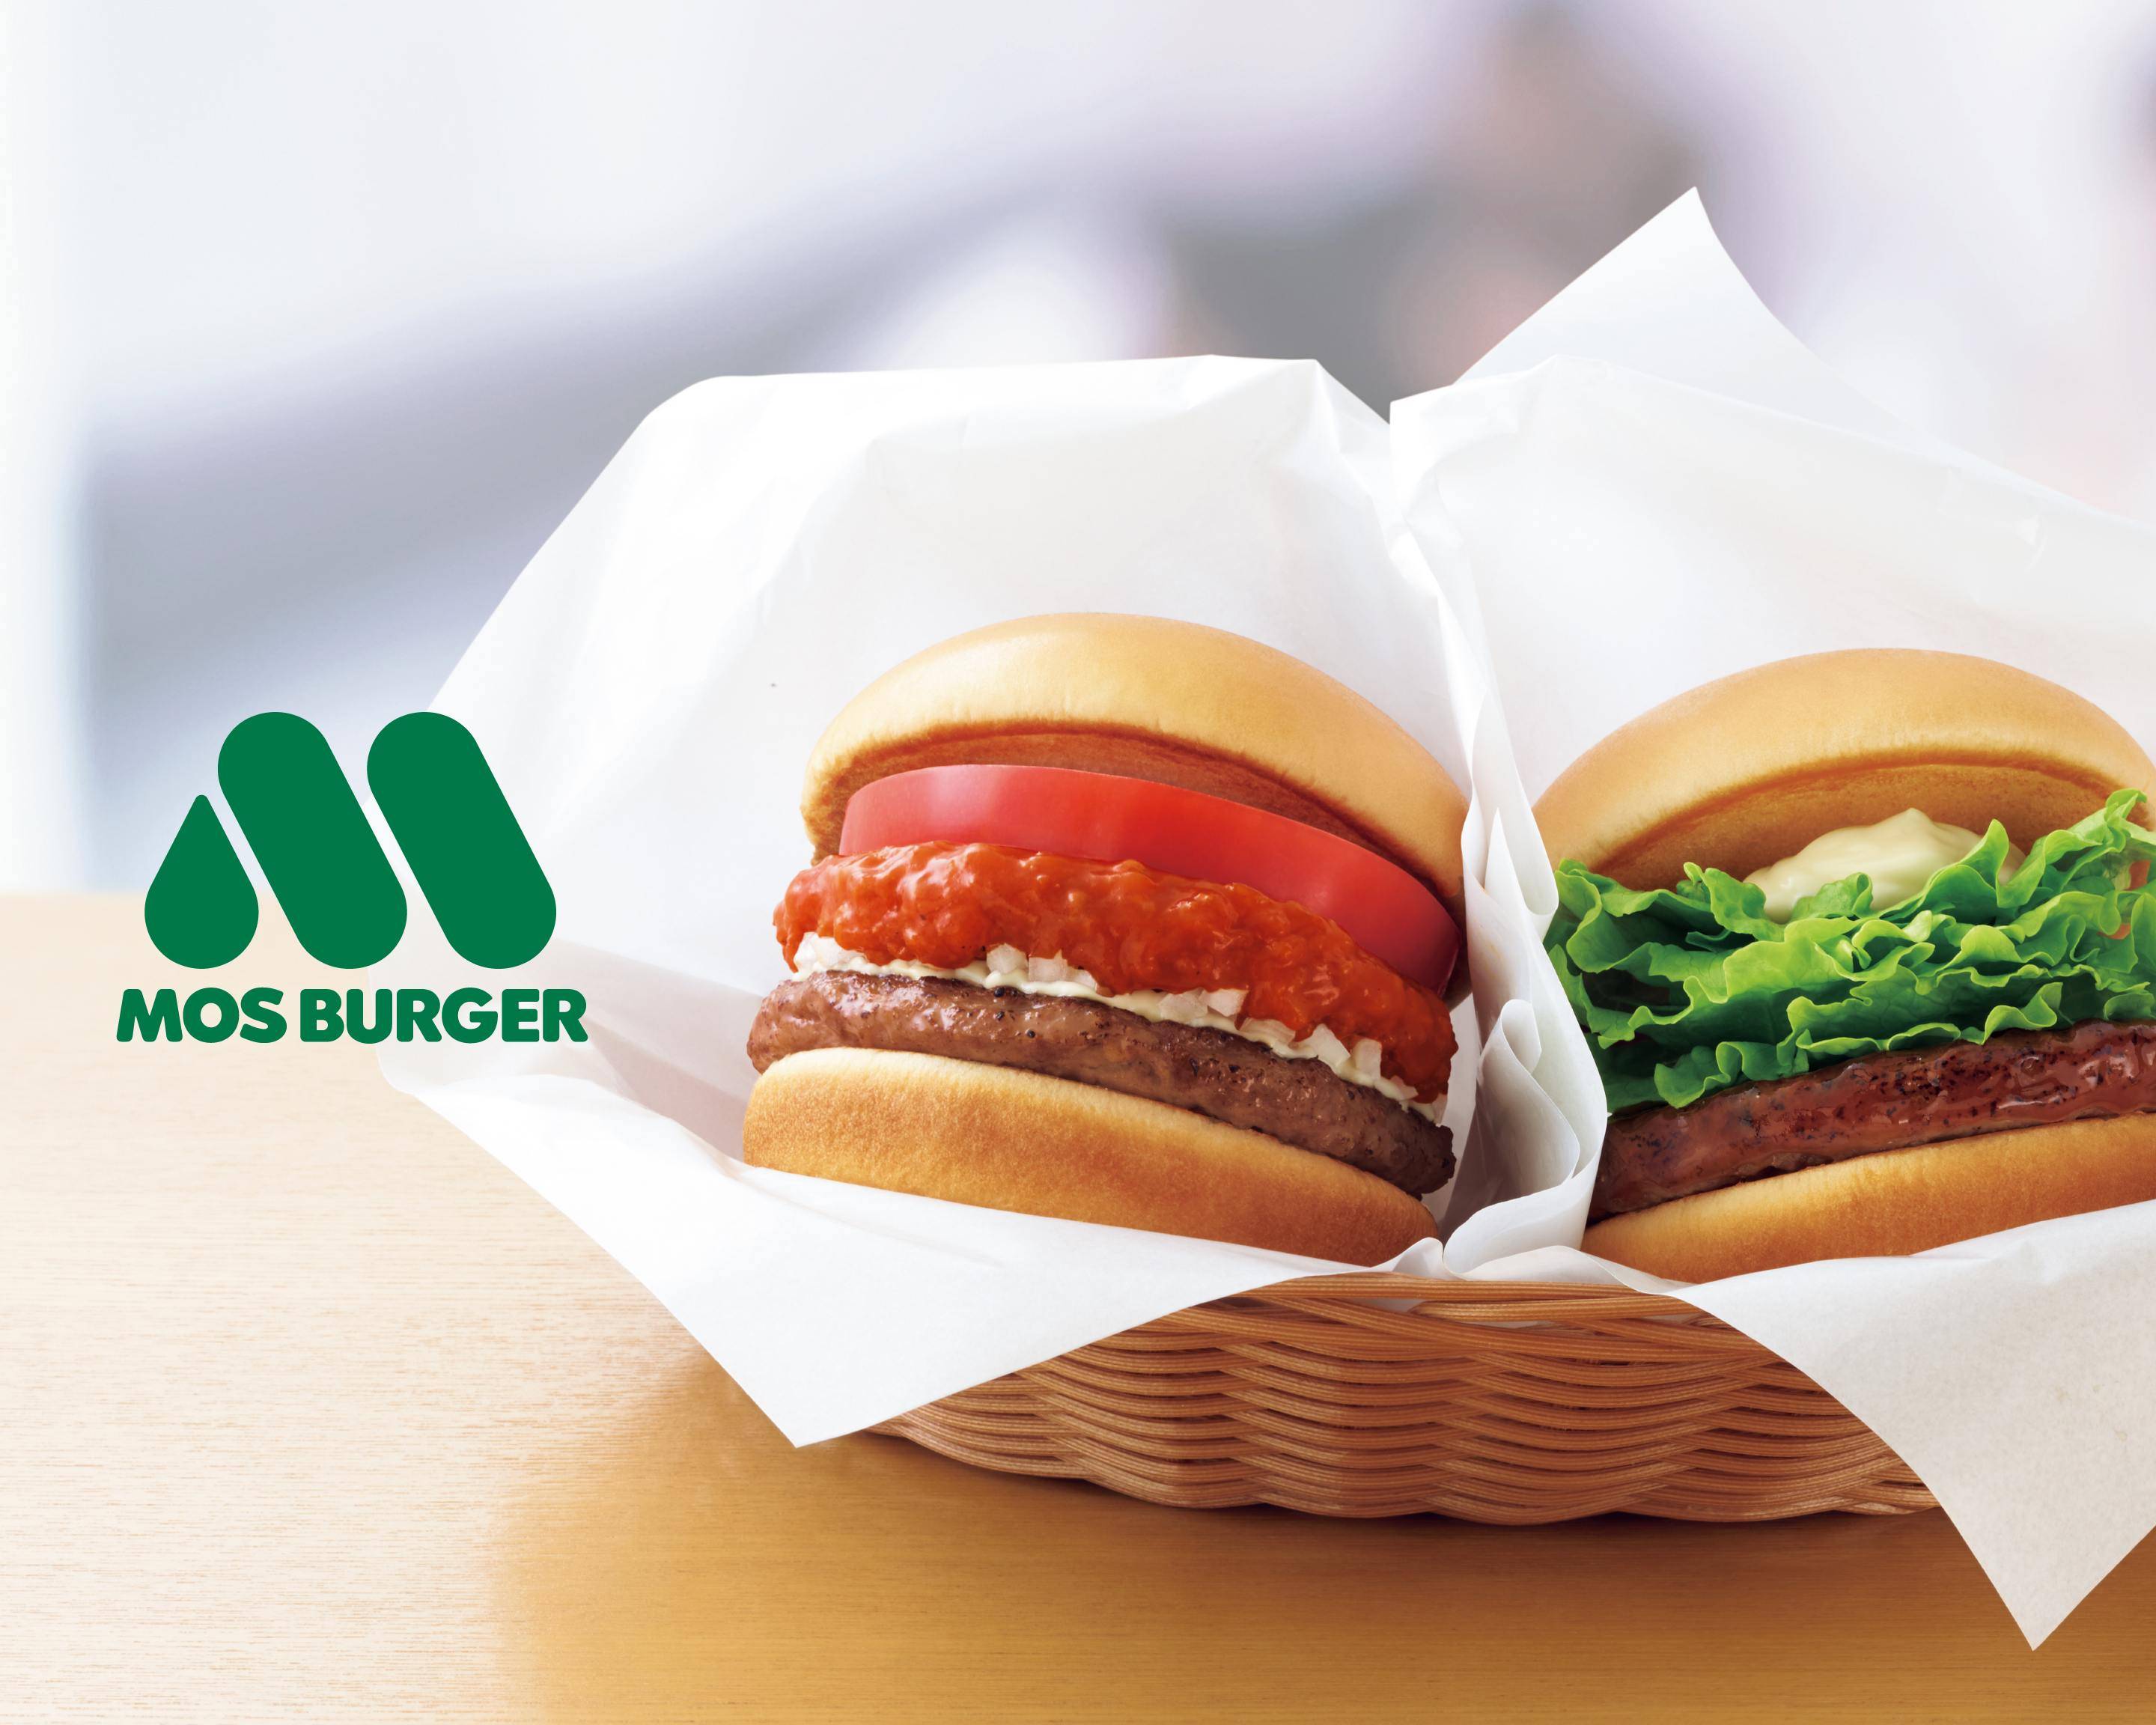 モスバーガー 練馬駅店 Mos Burger NERIMAEKIのメニューを配達| Uber Eats